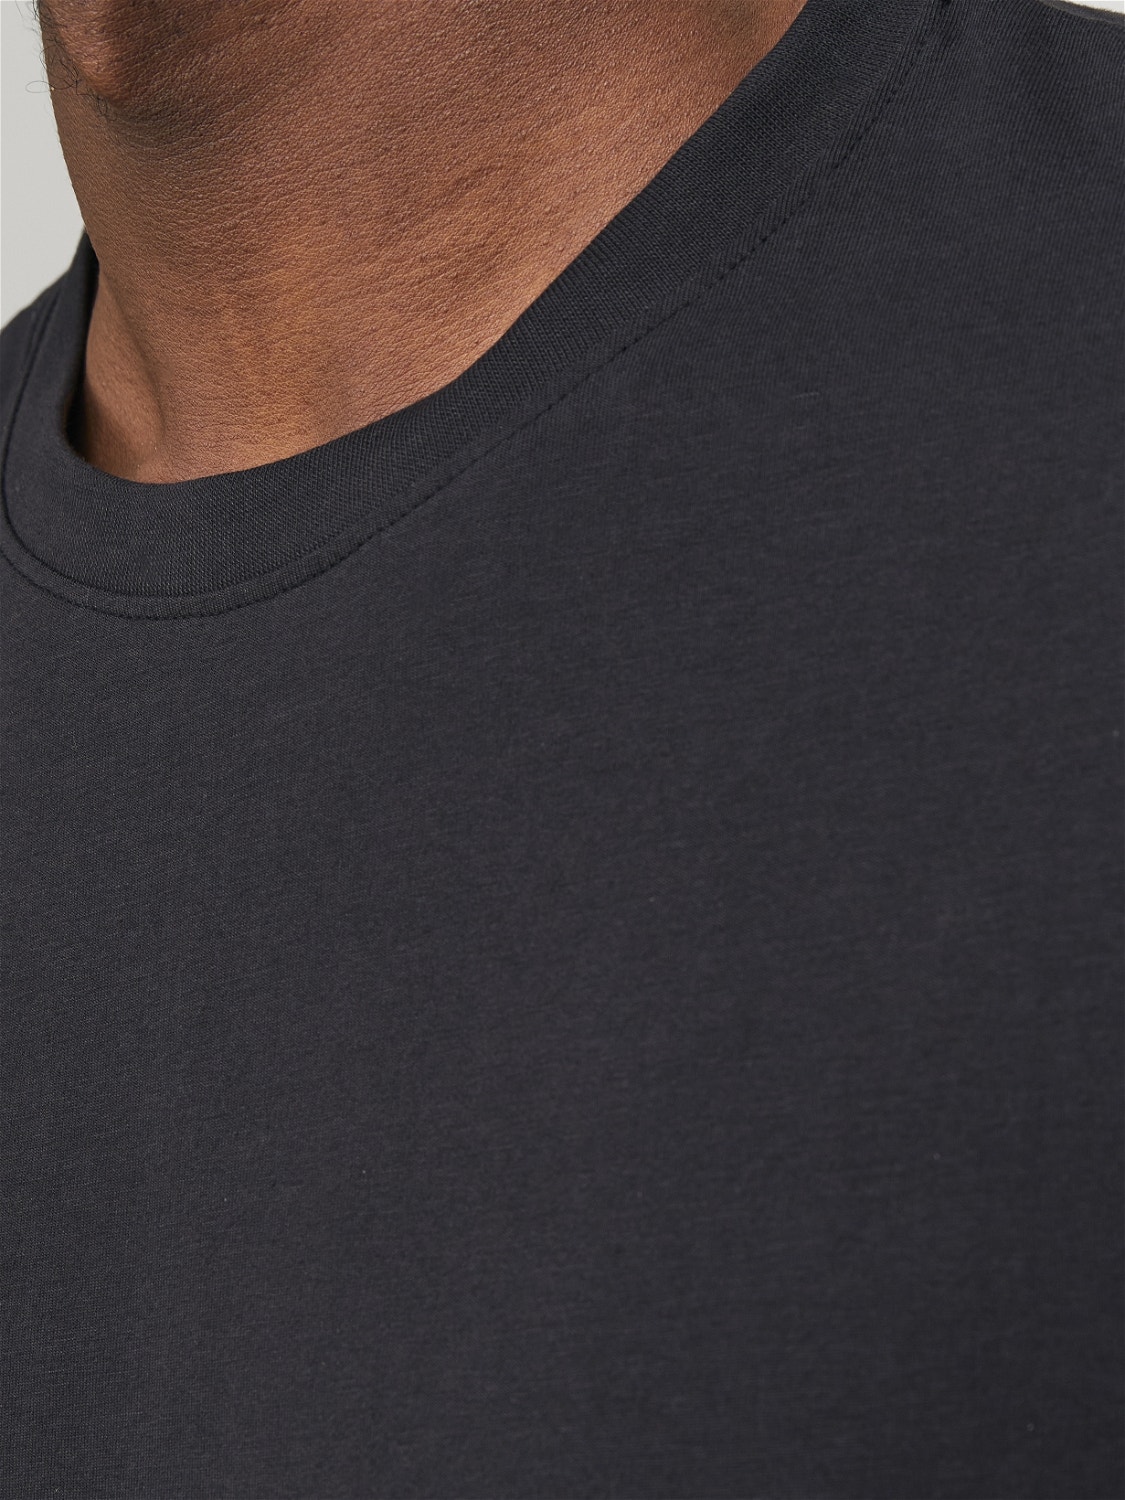 Jack & Jones Plain Crew neck T-shirt -Black Onyx - 12251351